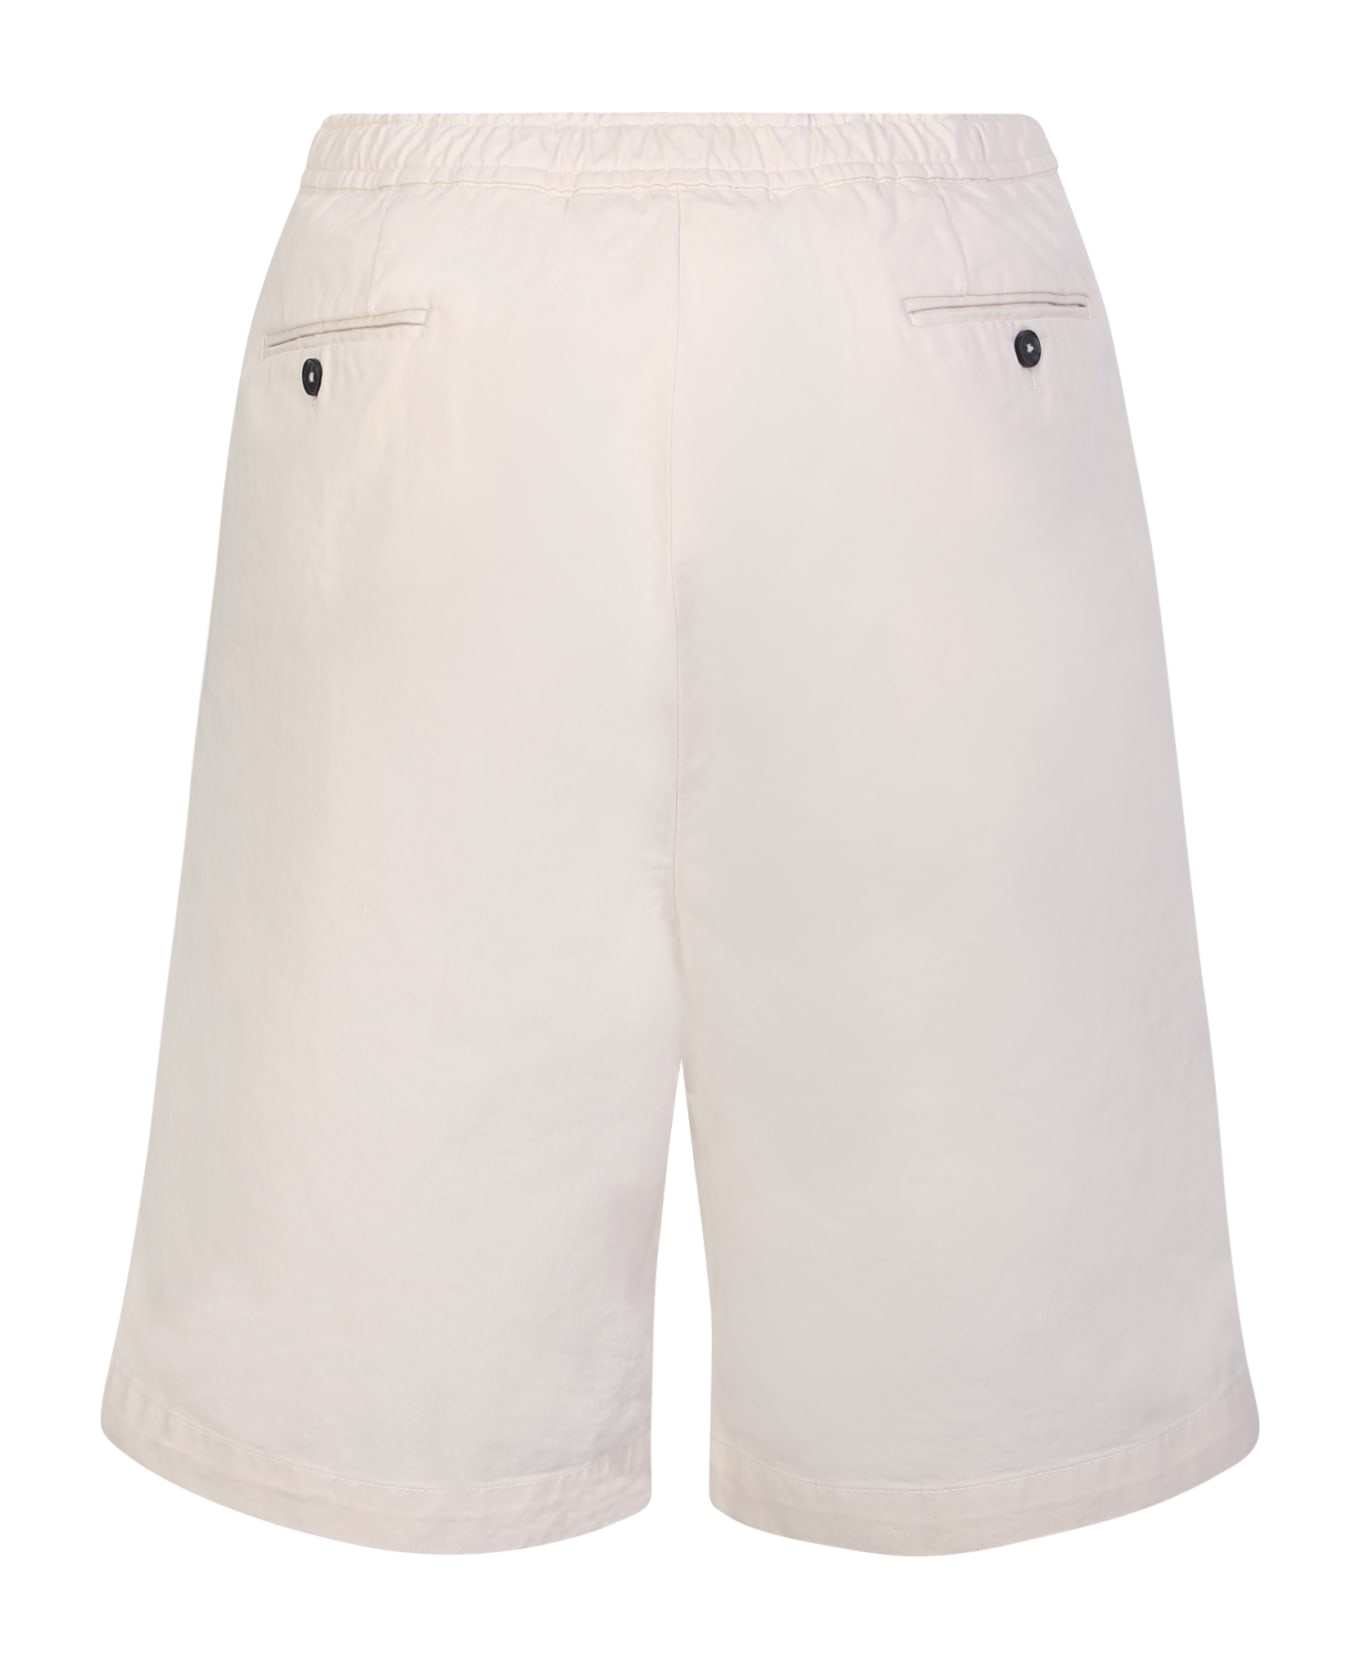 Officine Générale Light Beige Cotton Shorts - Beige ショートパンツ